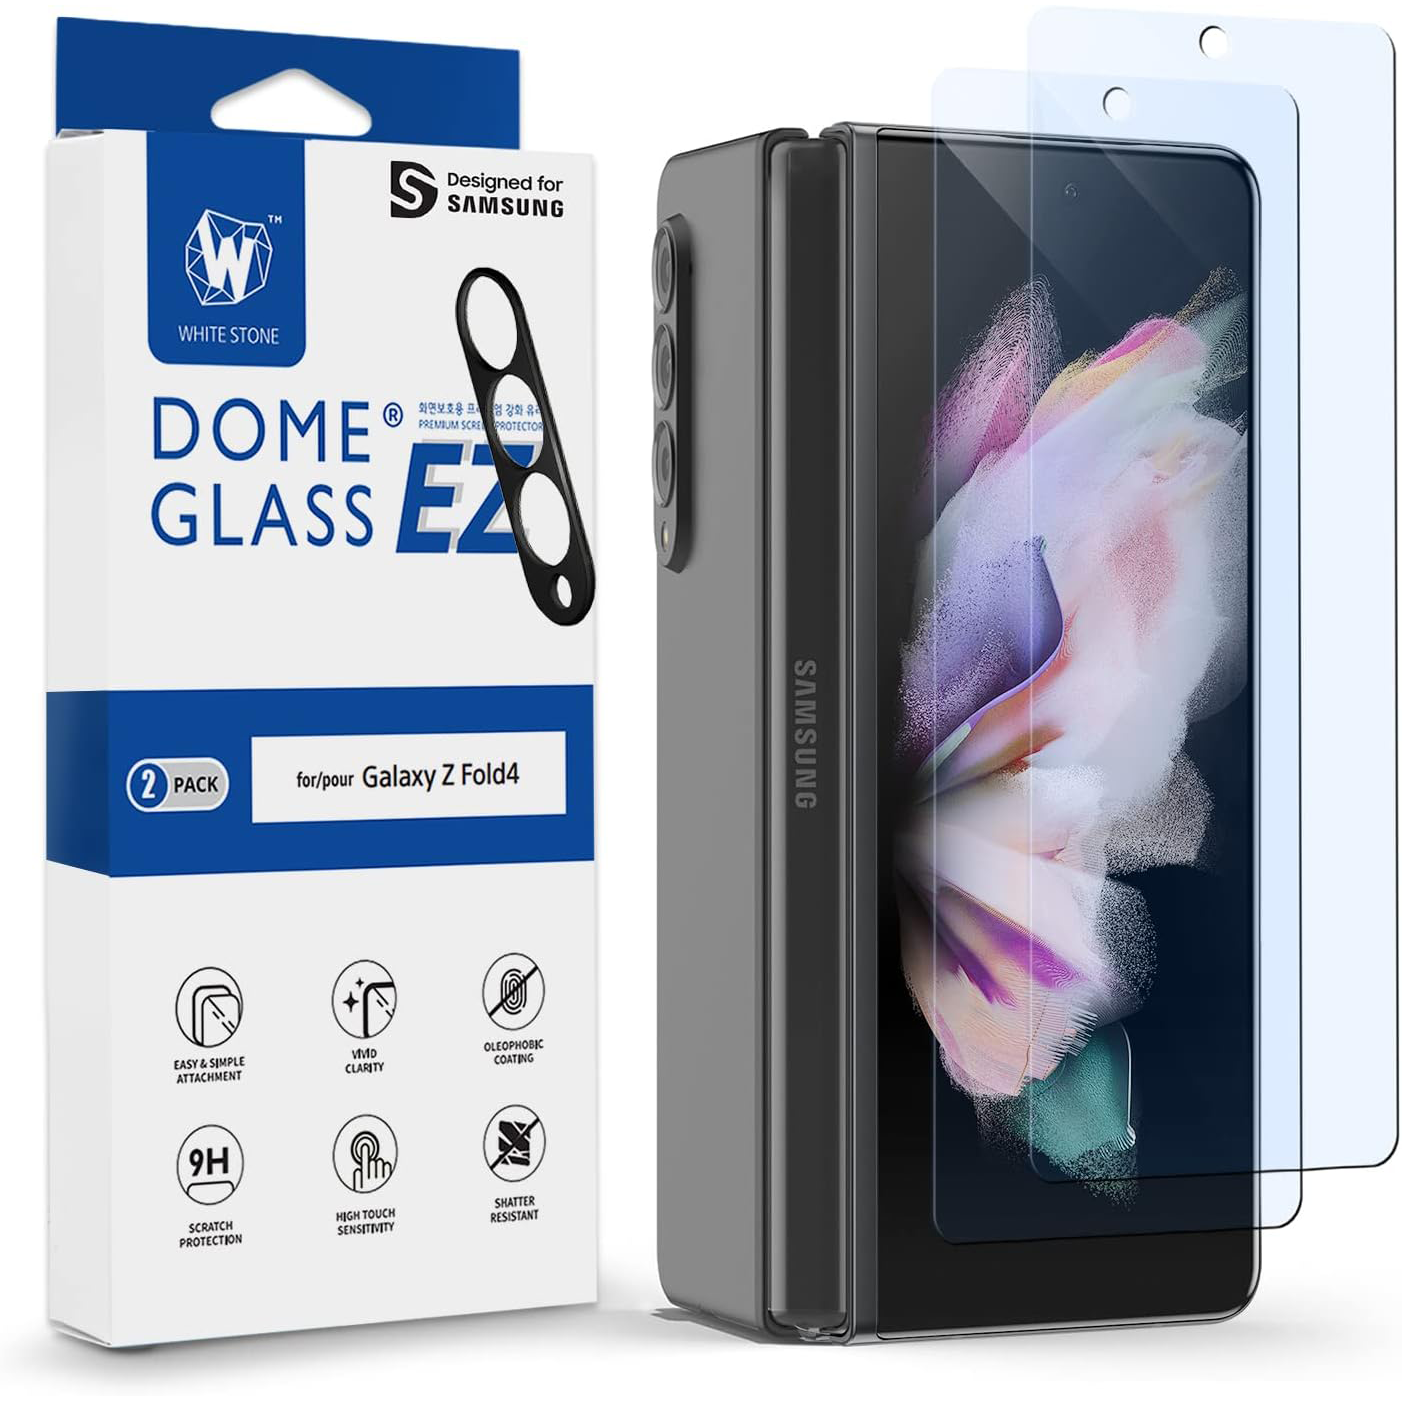 Whitestone Dome EZ Glass Z Fold 4, vista frontal em camadas ao lado da embalagem